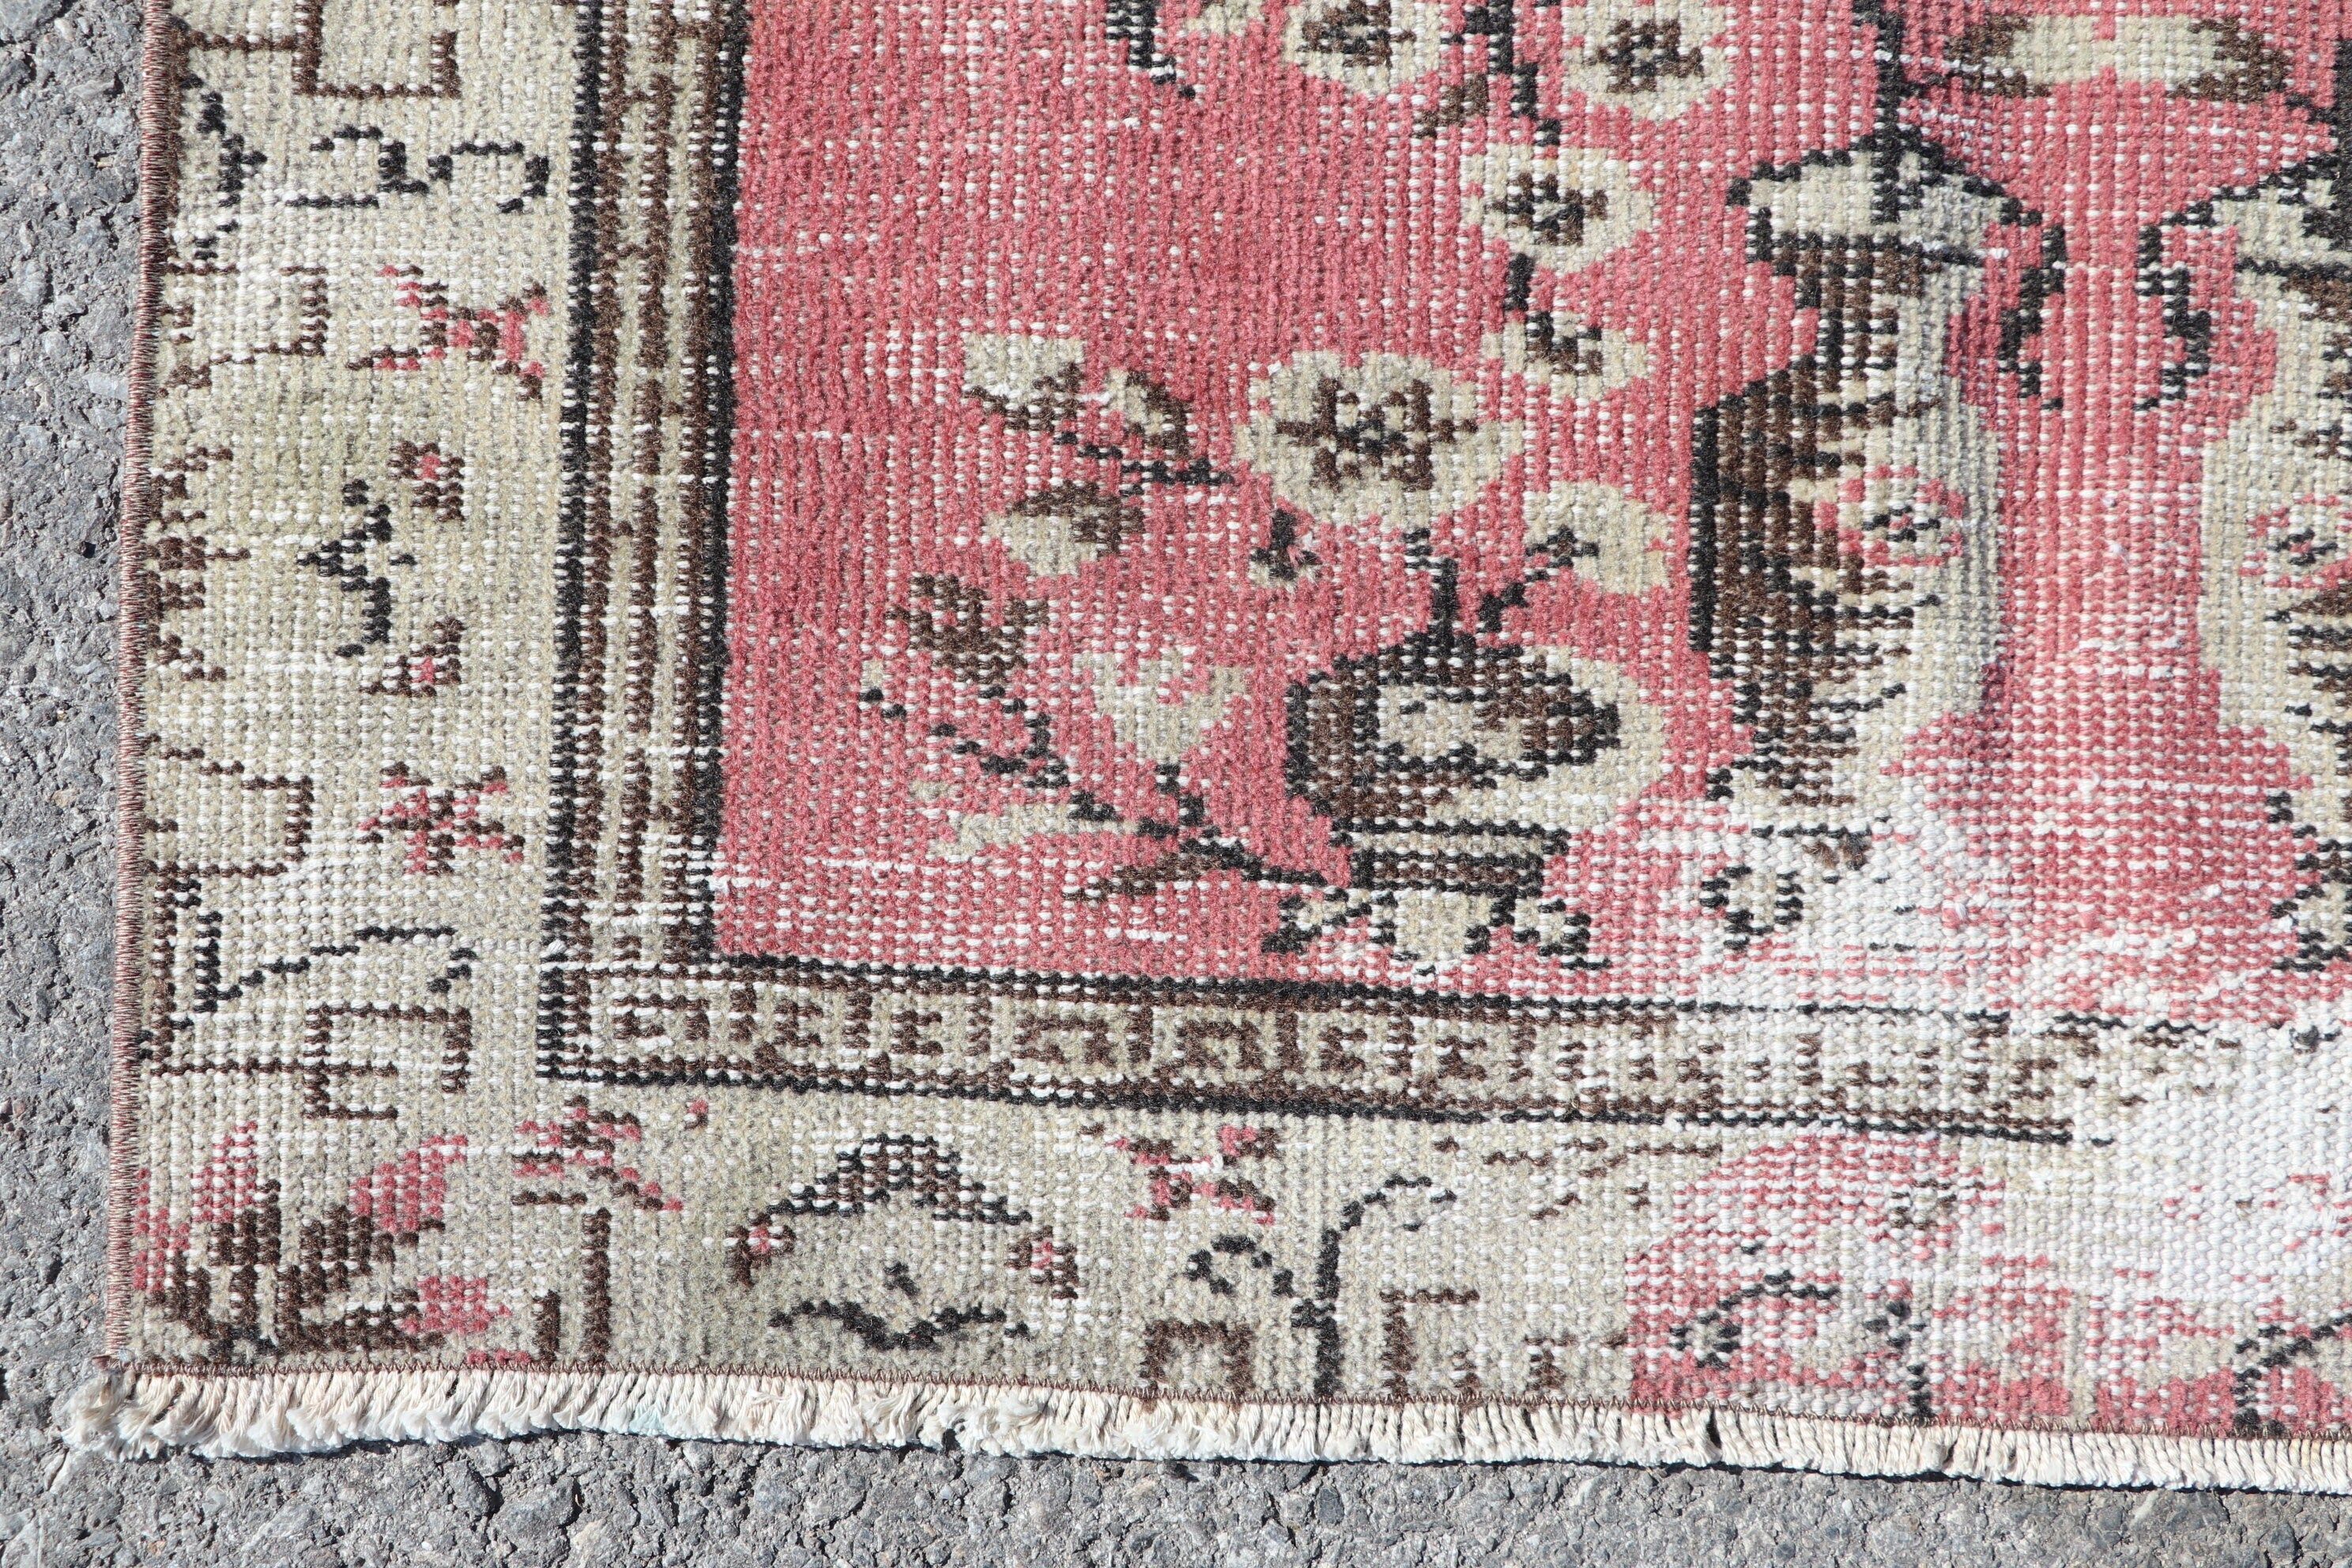 Vintage Rug, Pink Floor Rug, Turkish Rug, Bedroom Rug, Rugs for Kitchen, Nursery Rugs, Wool Rug, 3.5x6.4 ft Accent Rug